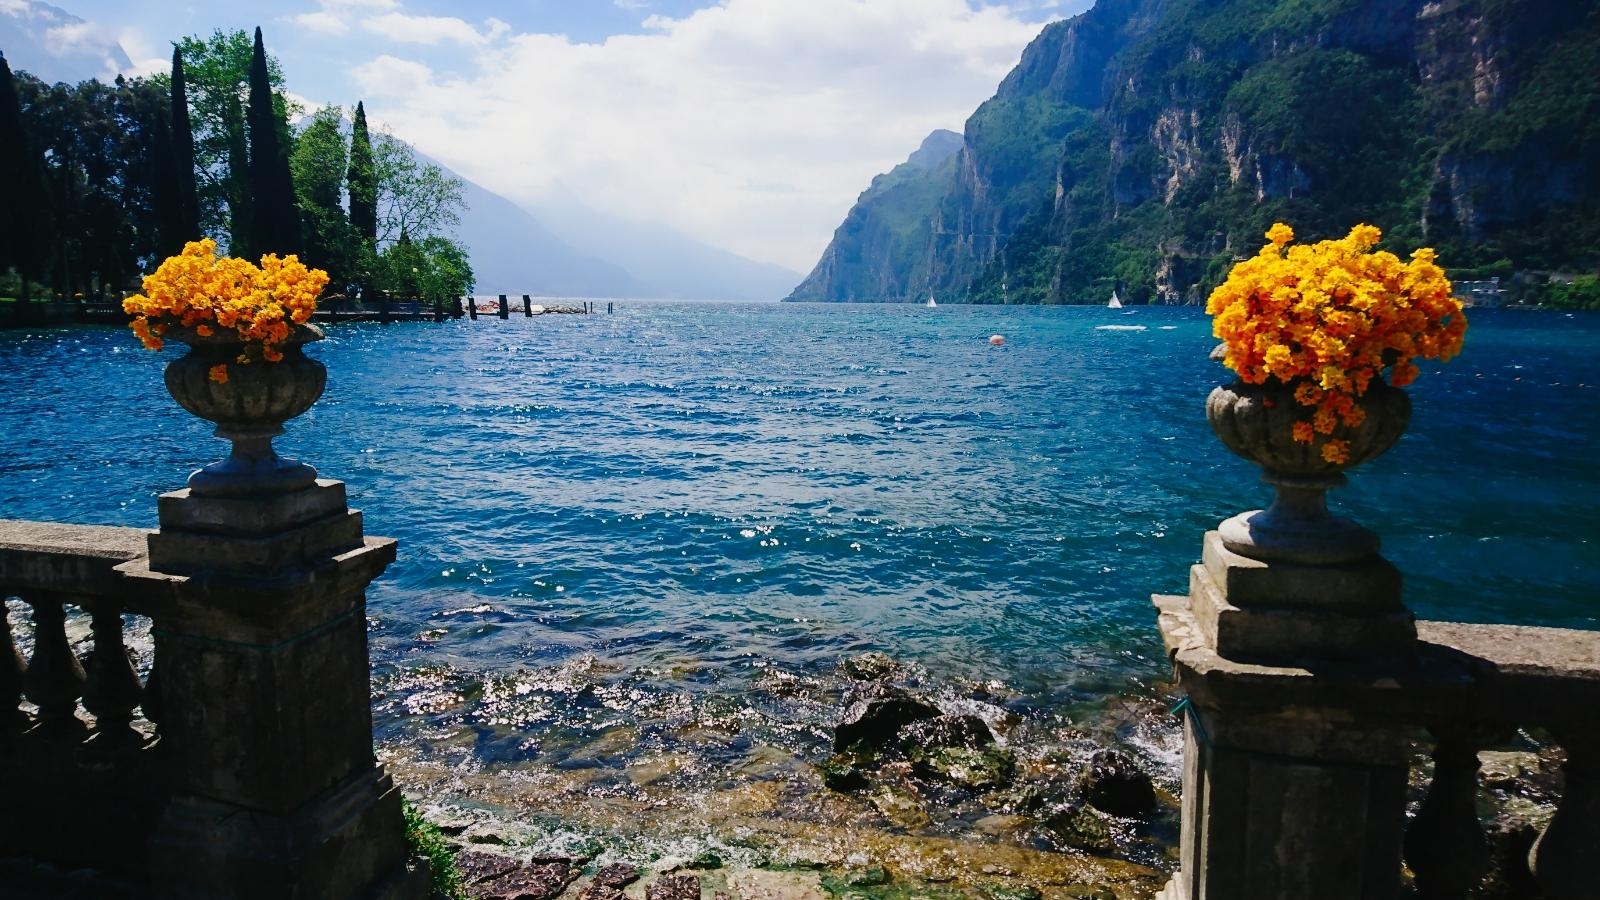 Lago di Garda 🌅
#happyplace #urlaub #travel #spring